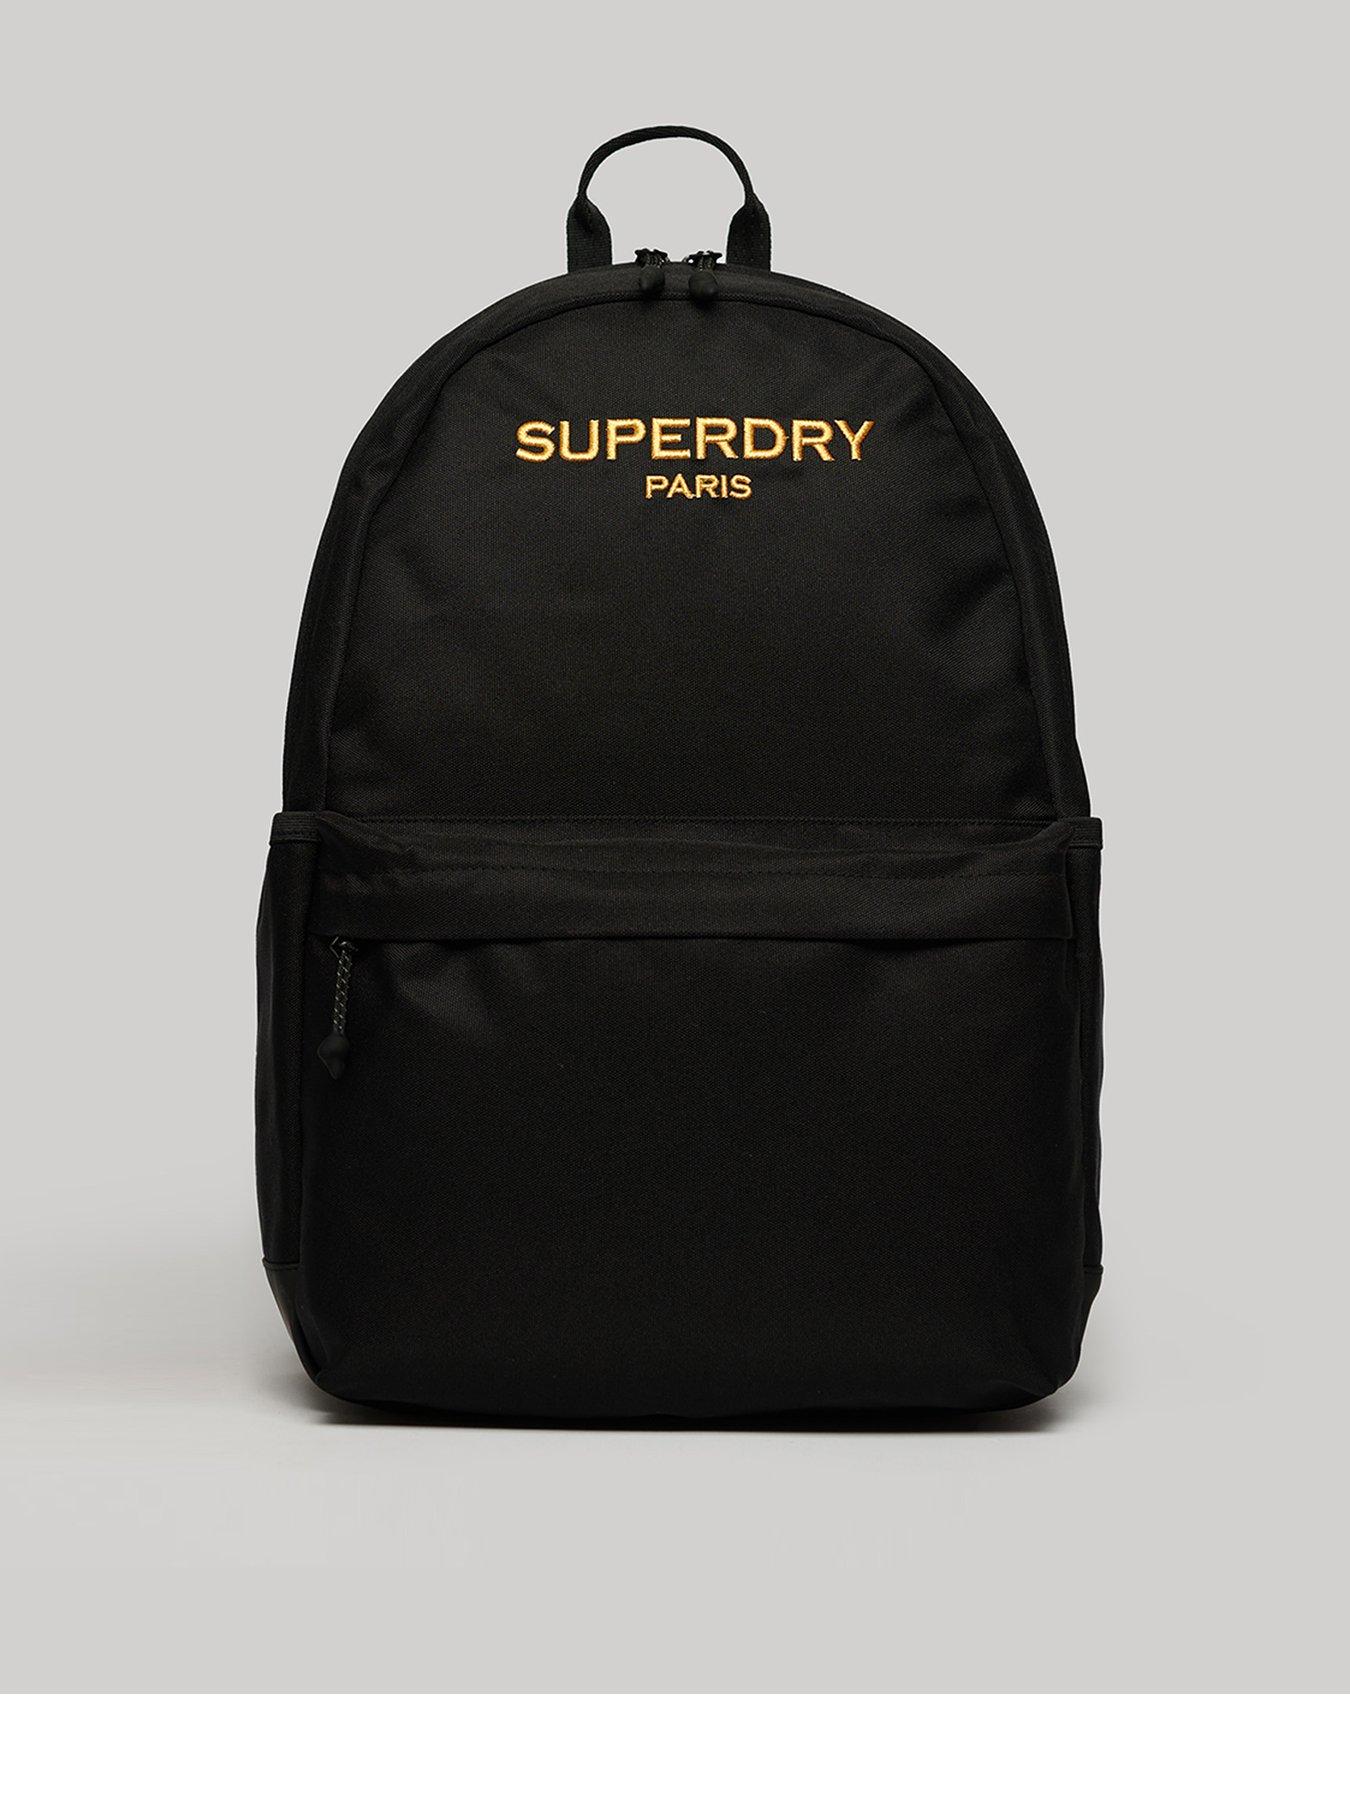 Superdry Top Handle Backpack - Men's Mens Bags